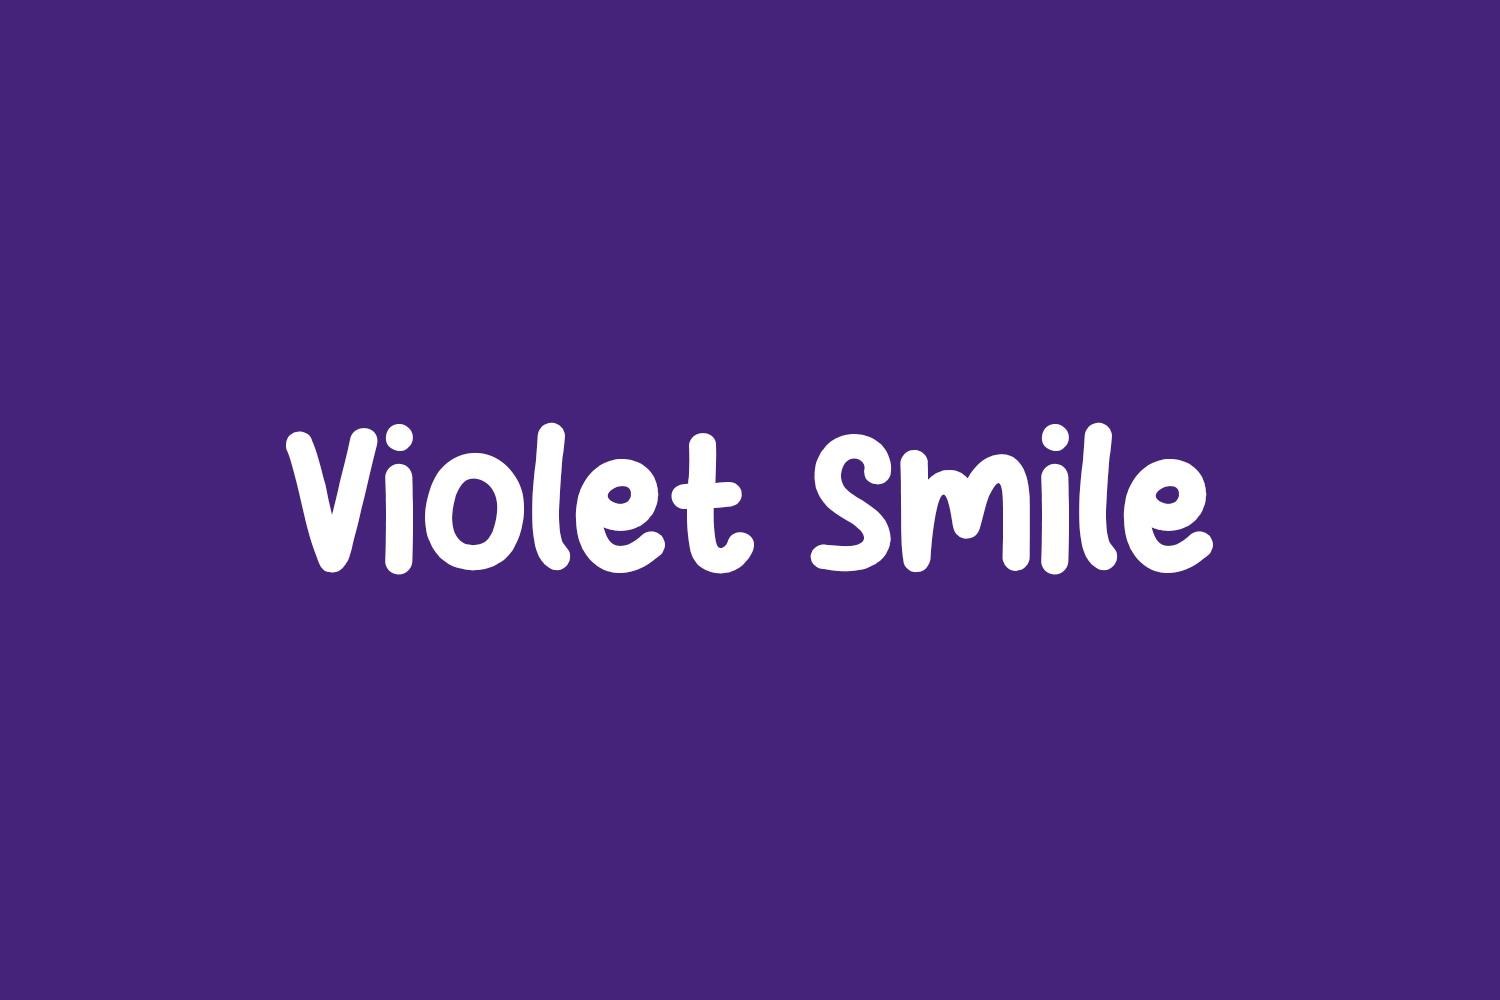 Violet Smile Free Font